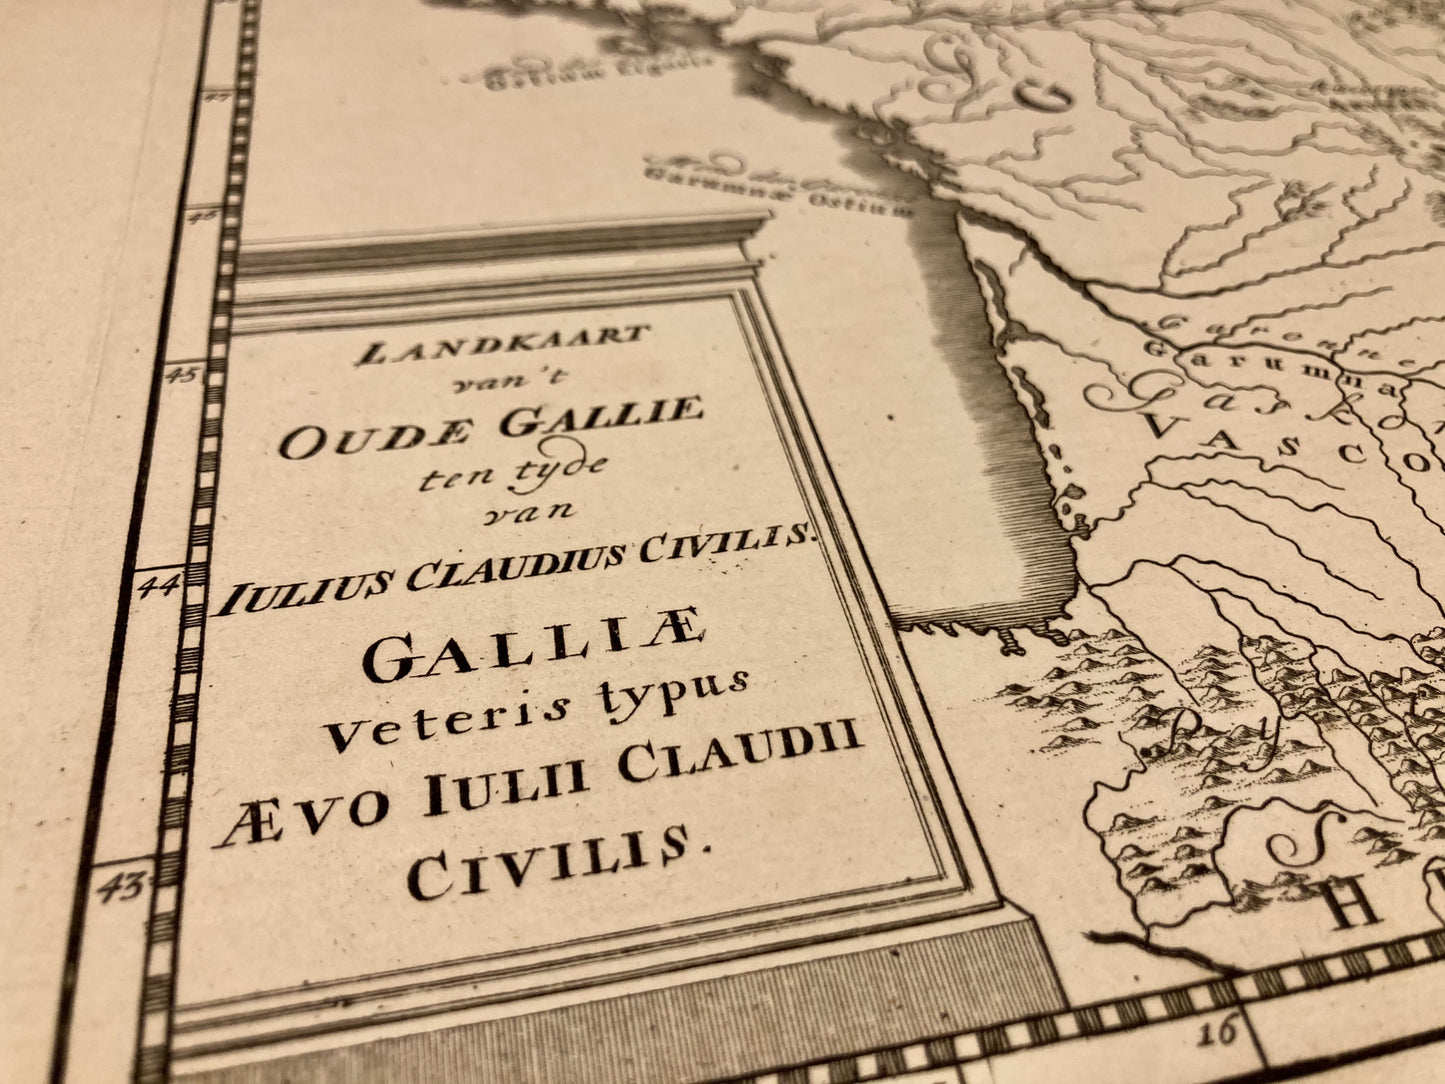 Cartouche de la carte ancienne hollandaise de la Gaule